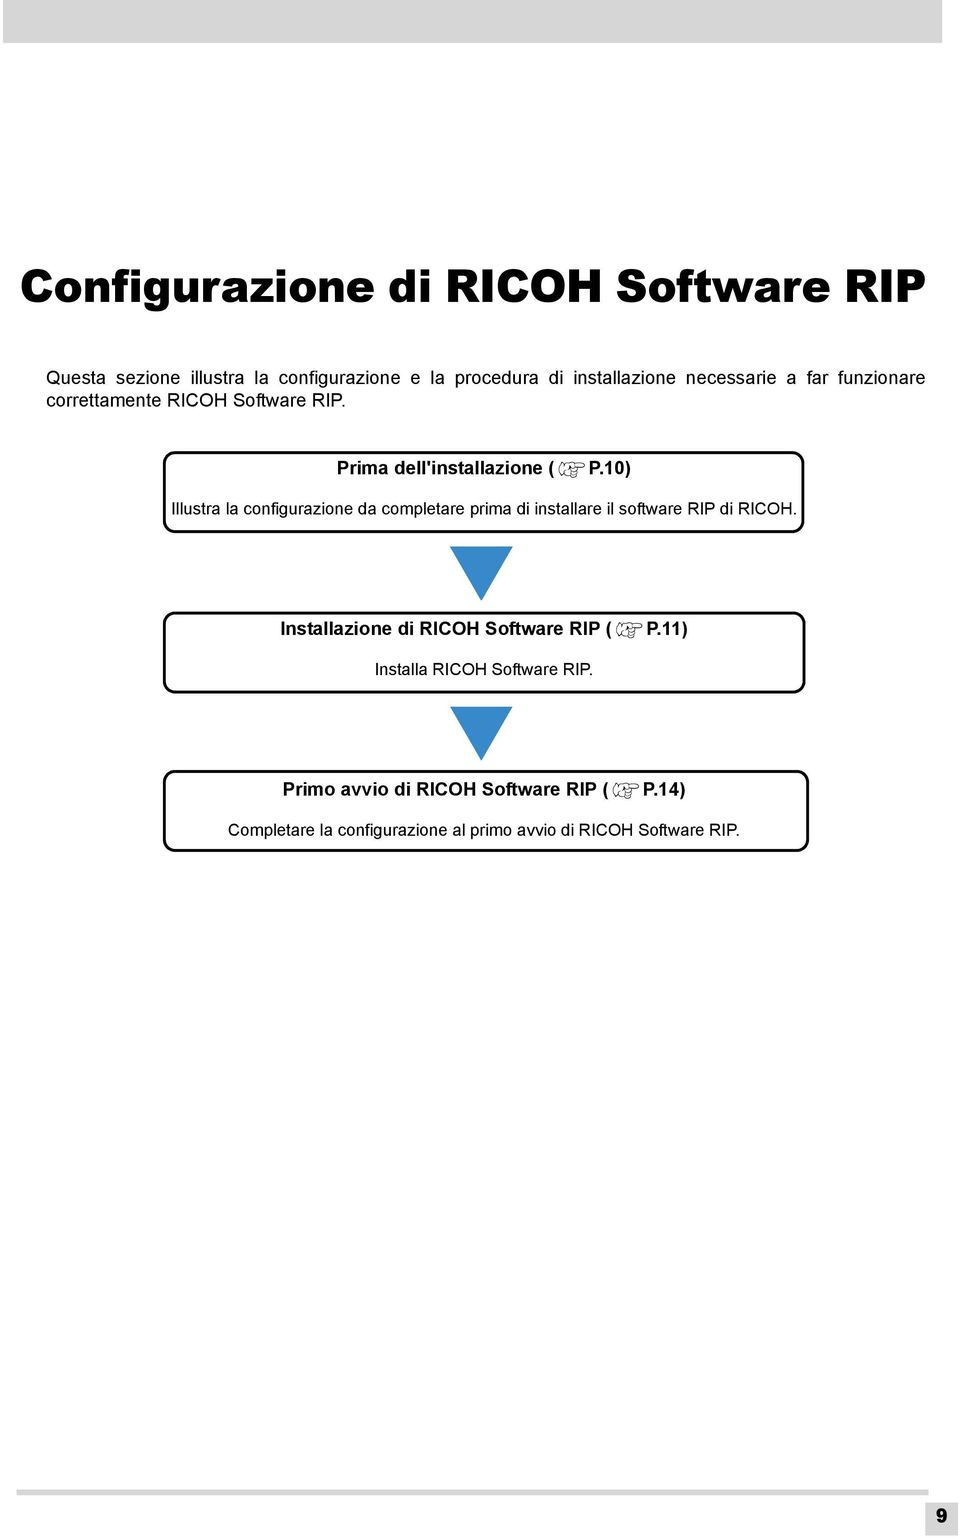 10) Illustra la configurazione da completare prima di installare il software RIP di RICOH.